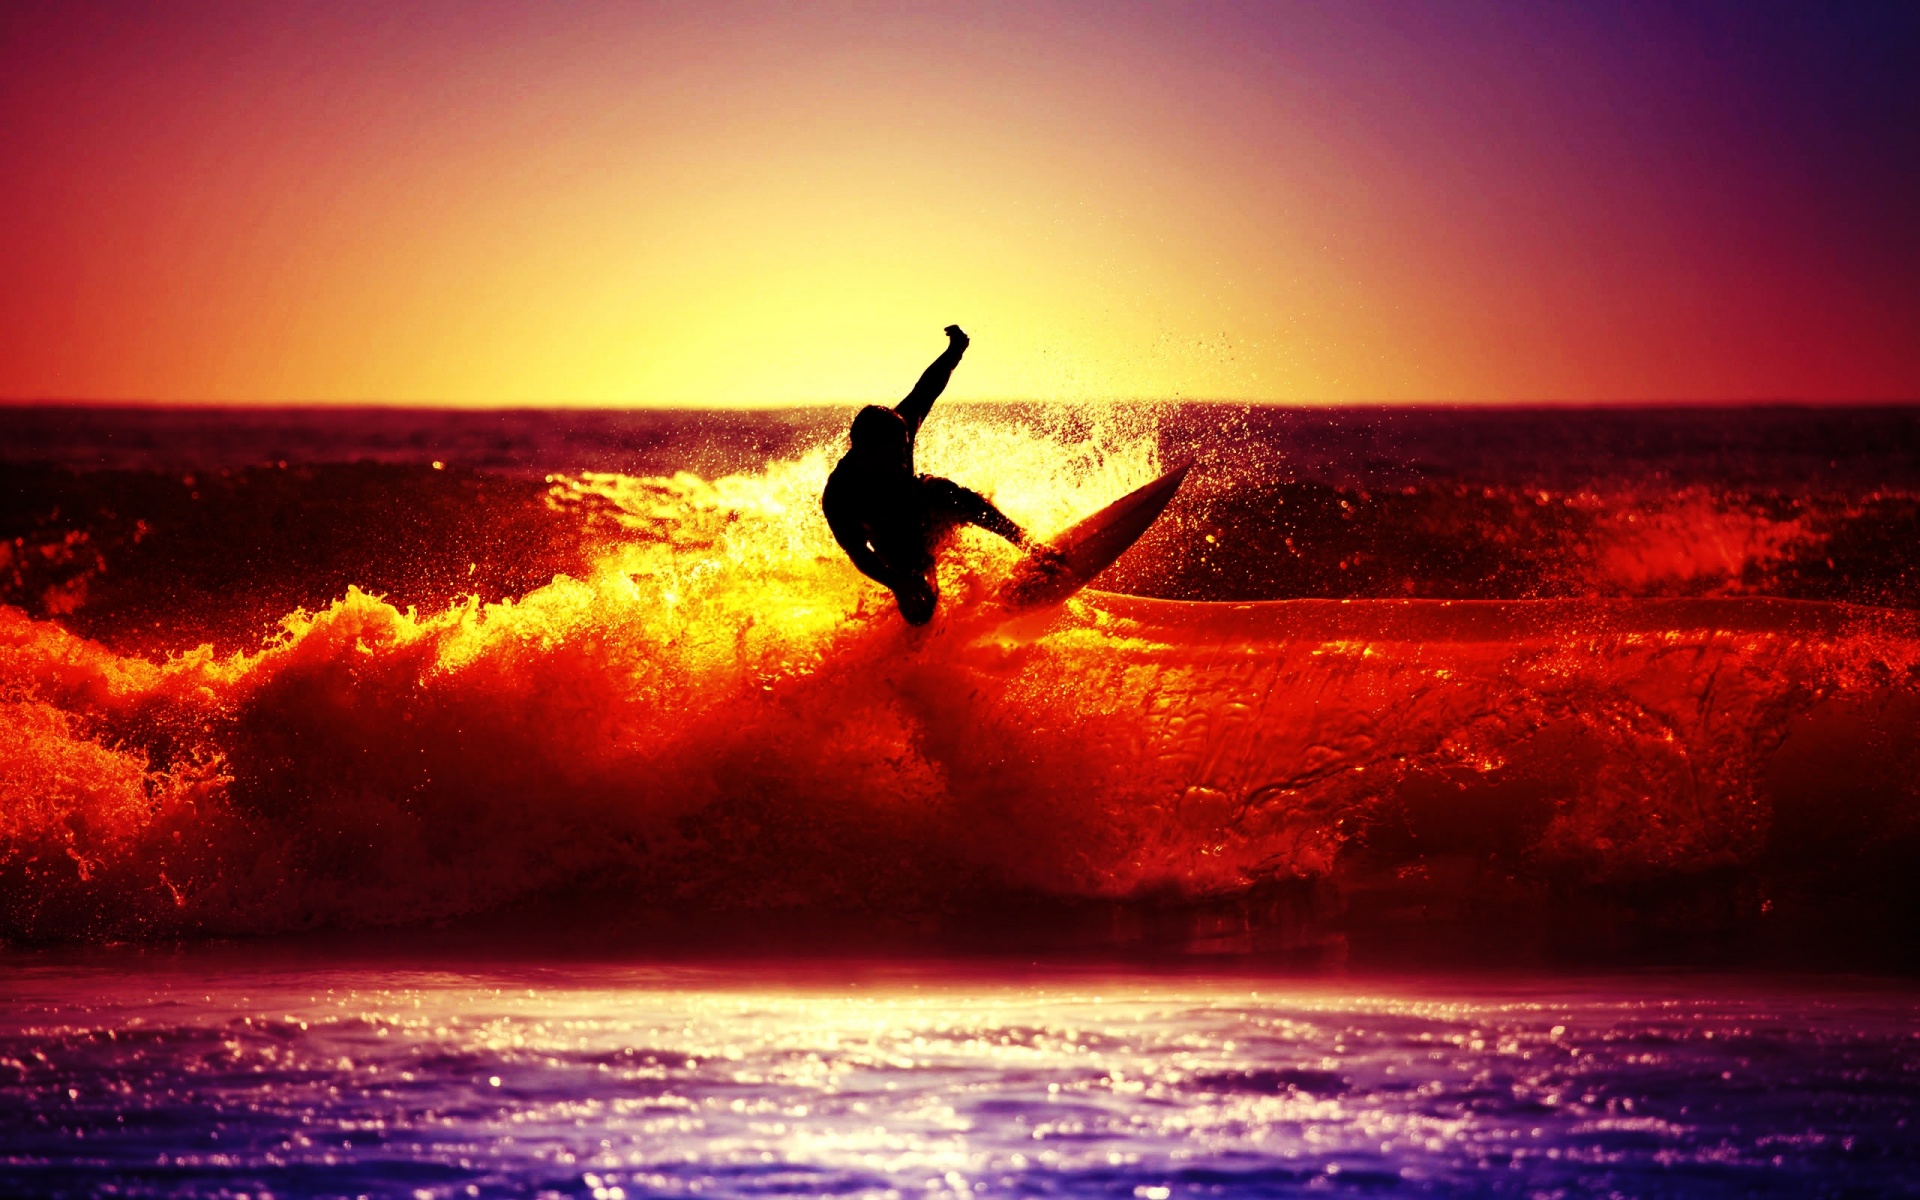 HD Surf Beach Wallpapers | PixelsTalk.Net